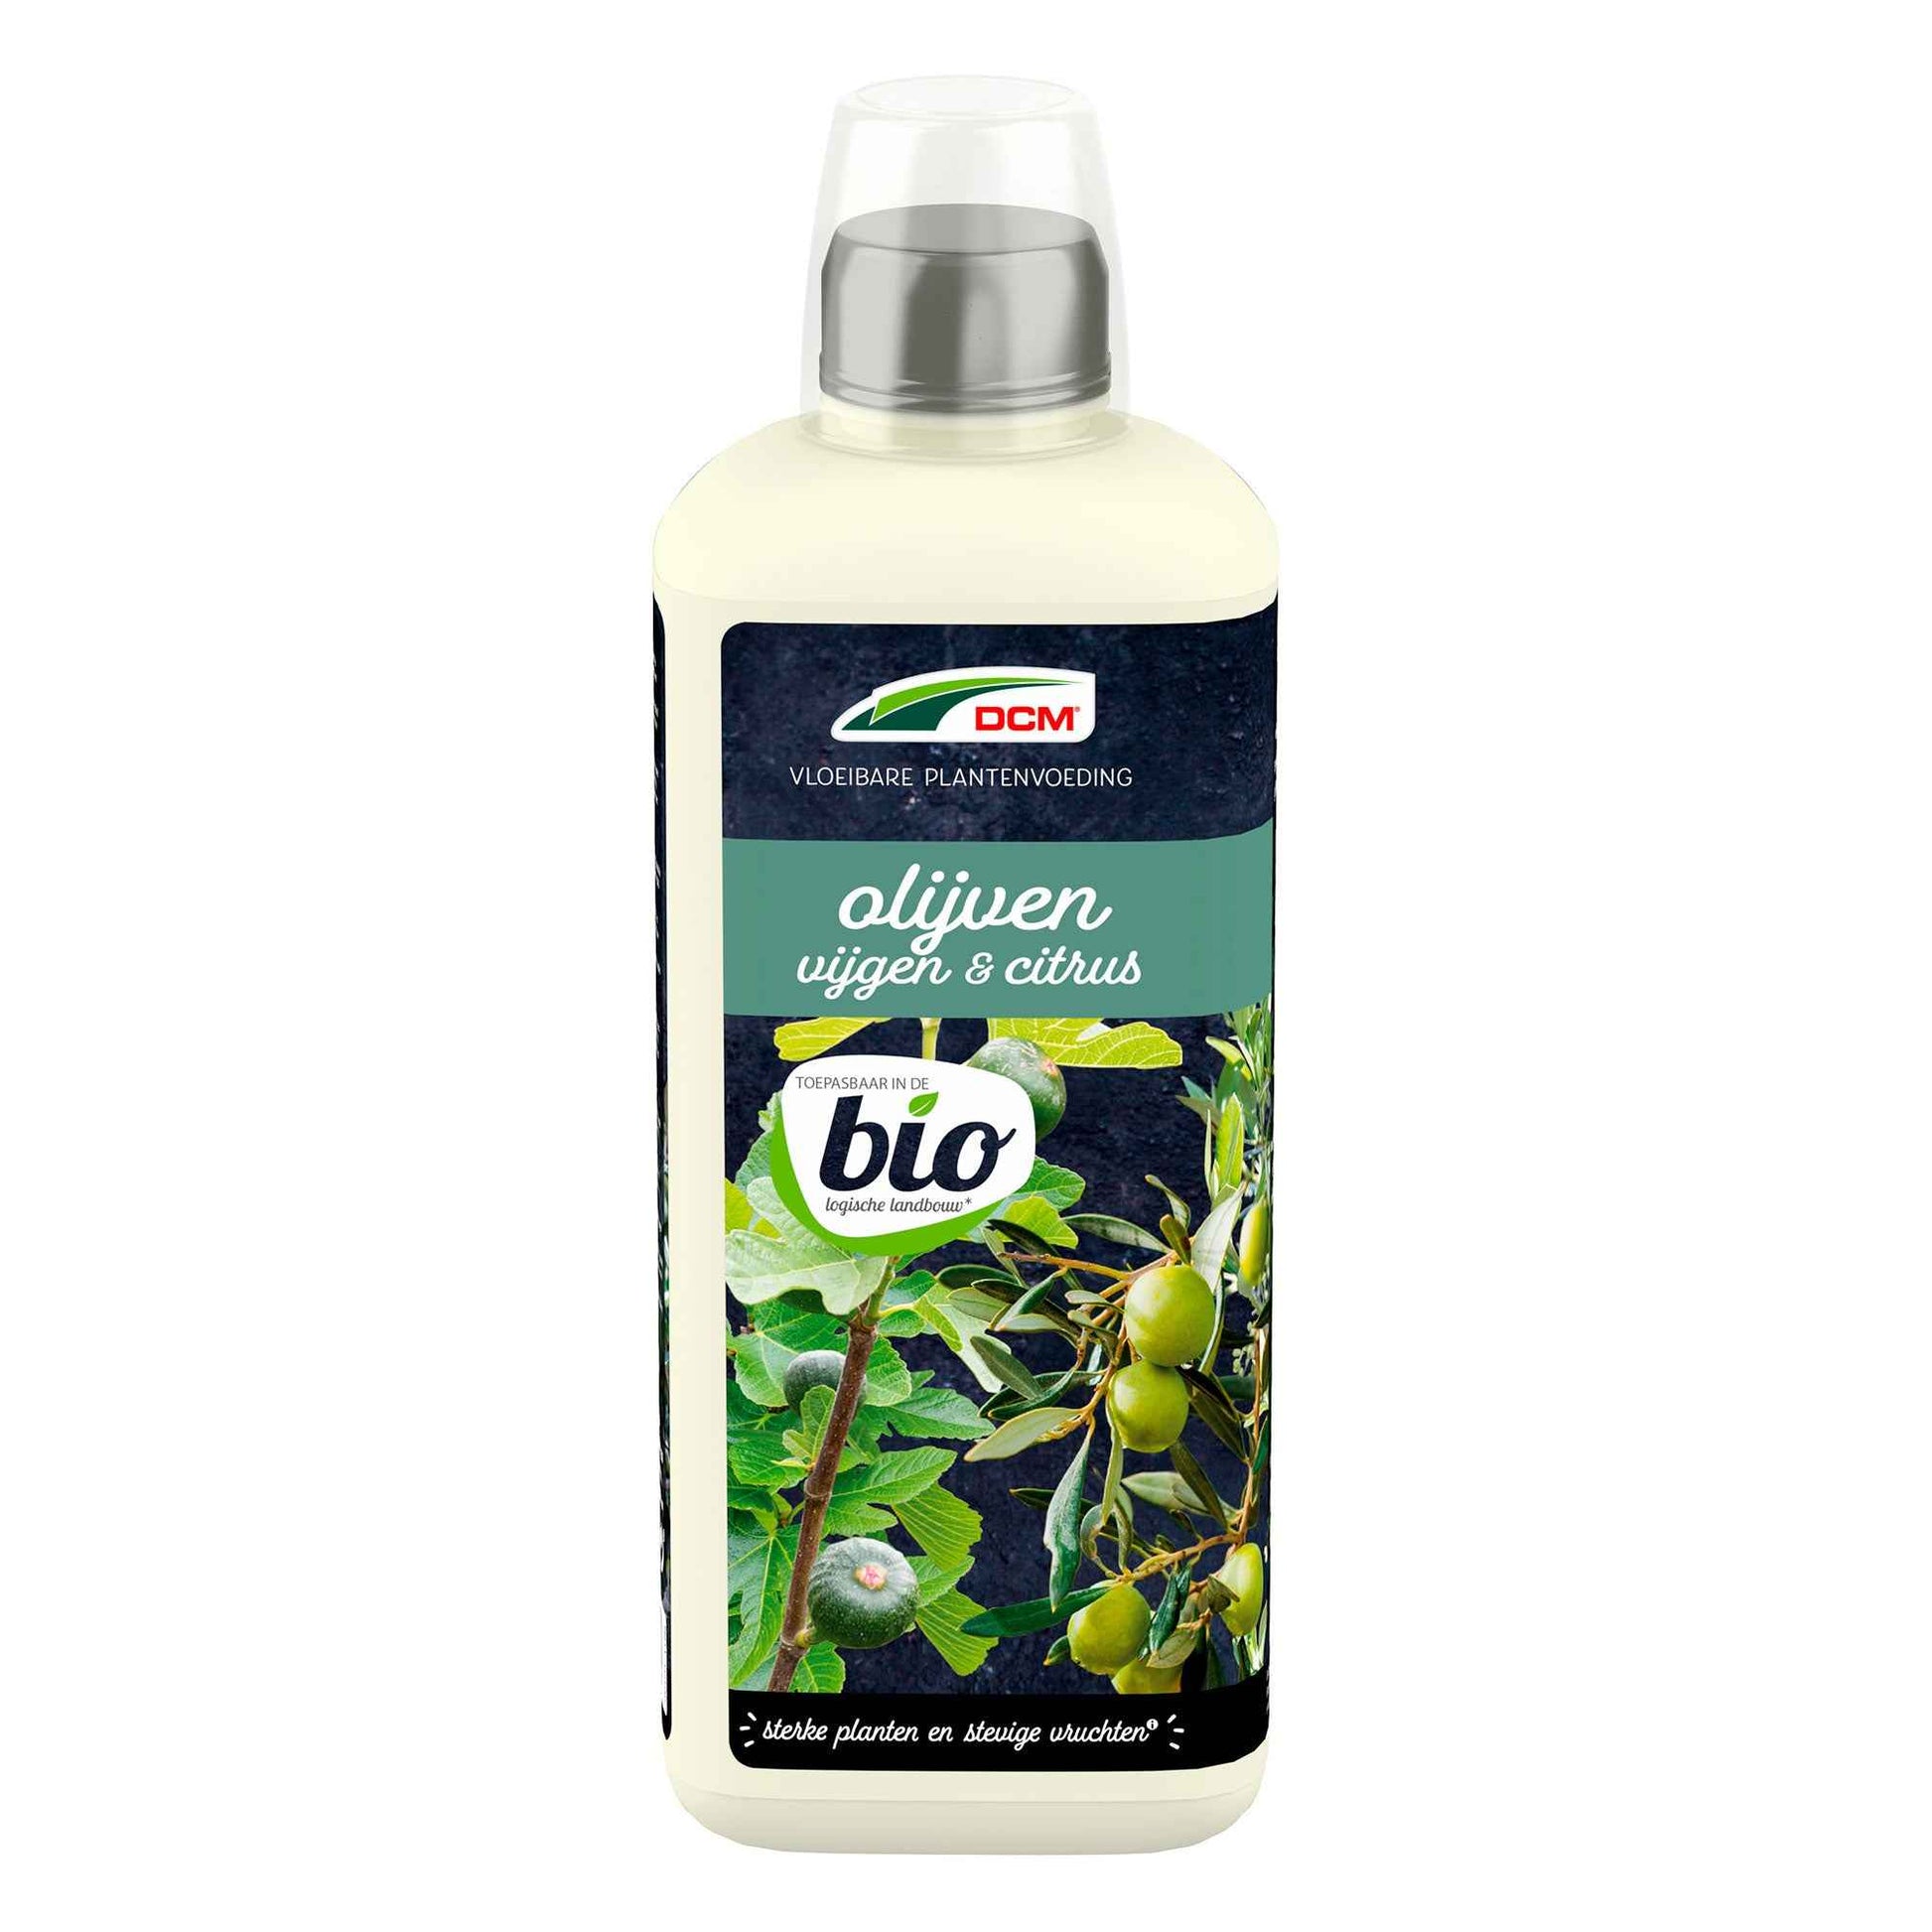 Engrais végétal liquide pour oliviers, figuiers et citronniers - Biologique 0,8 litre - DCM - Engrais